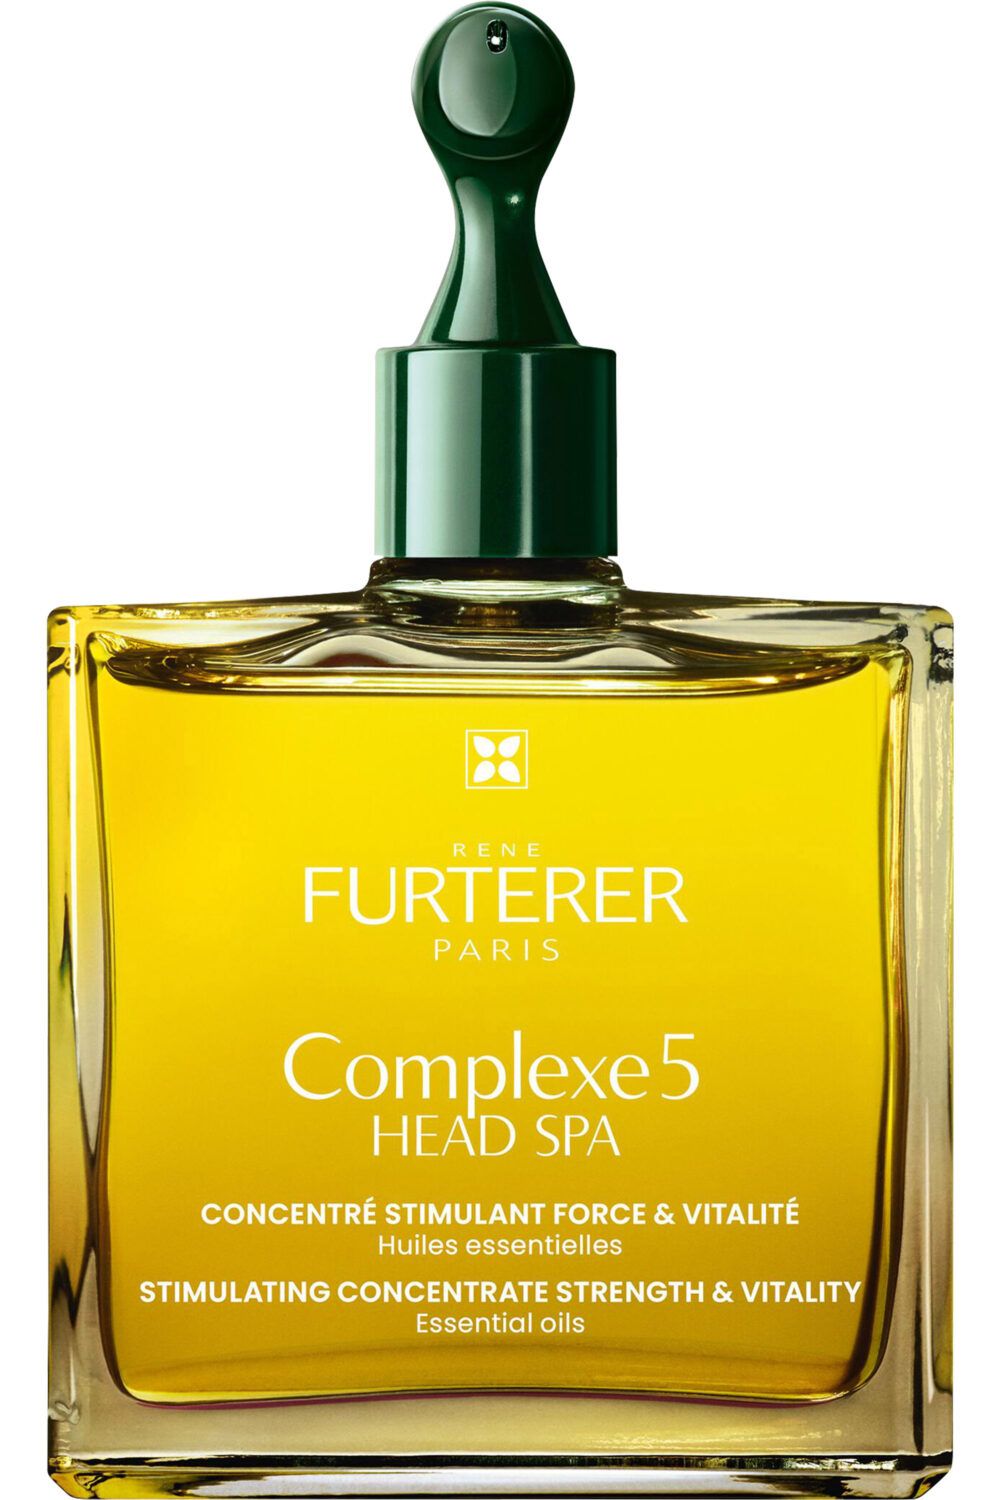 René Furterer - Soin cuir chevelu avant-shampoing aux huiles essentielles bio Head Spa